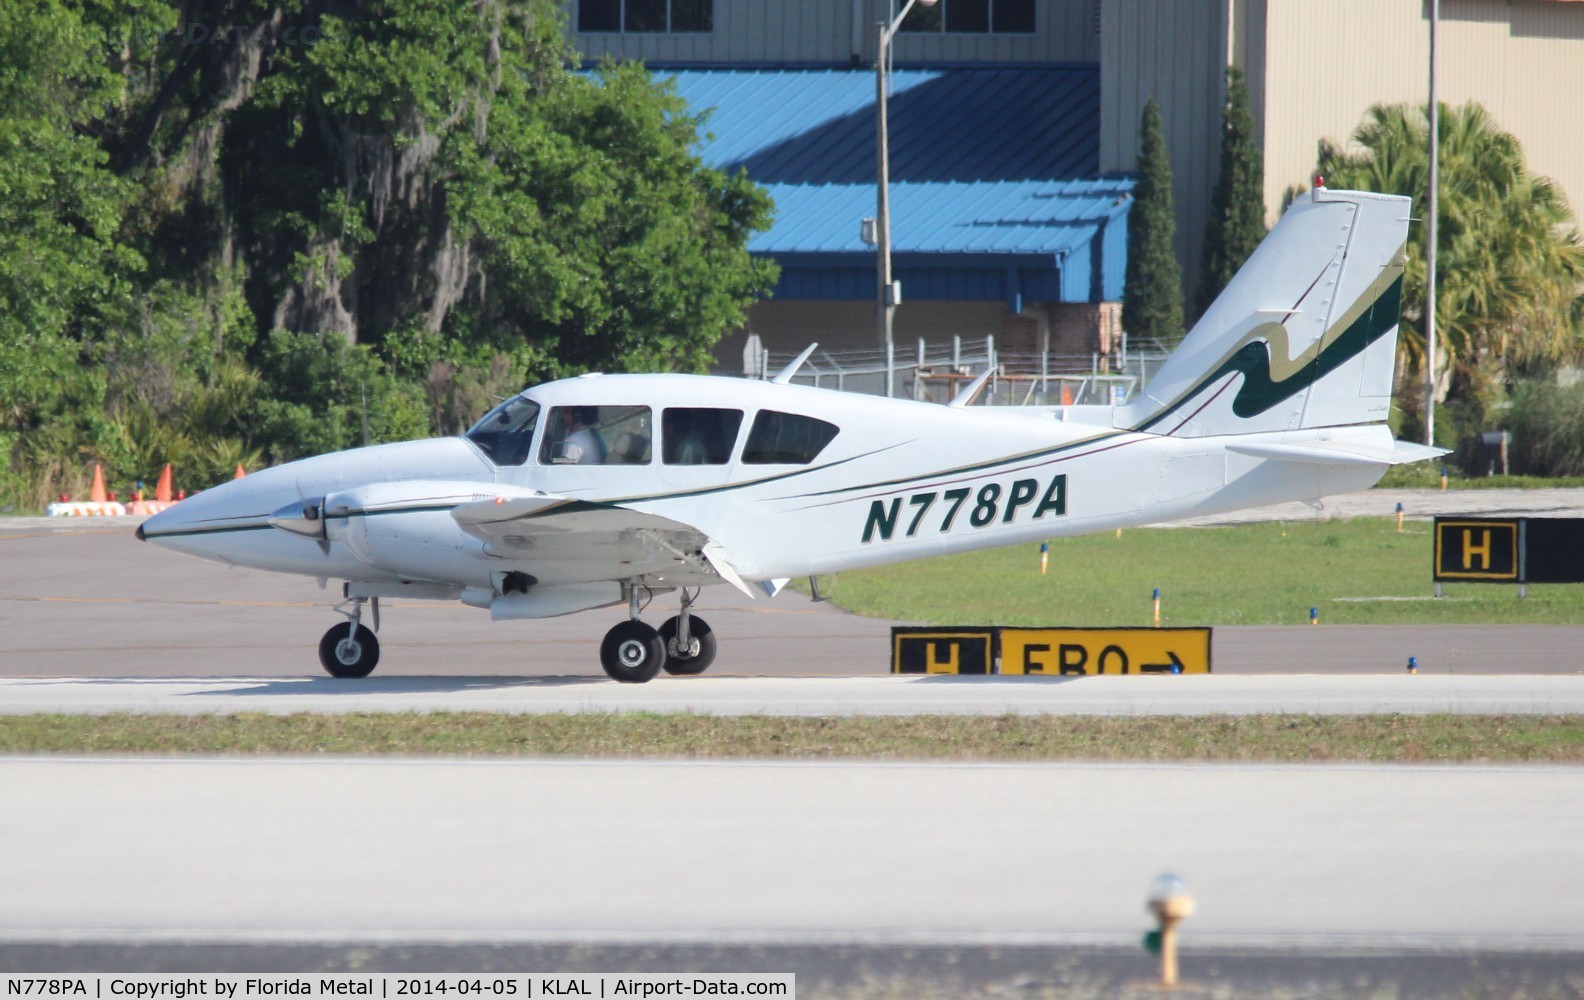 N778PA, 1977 Piper PA-23-250 C/N 27-7854053, SNF LAL 2014